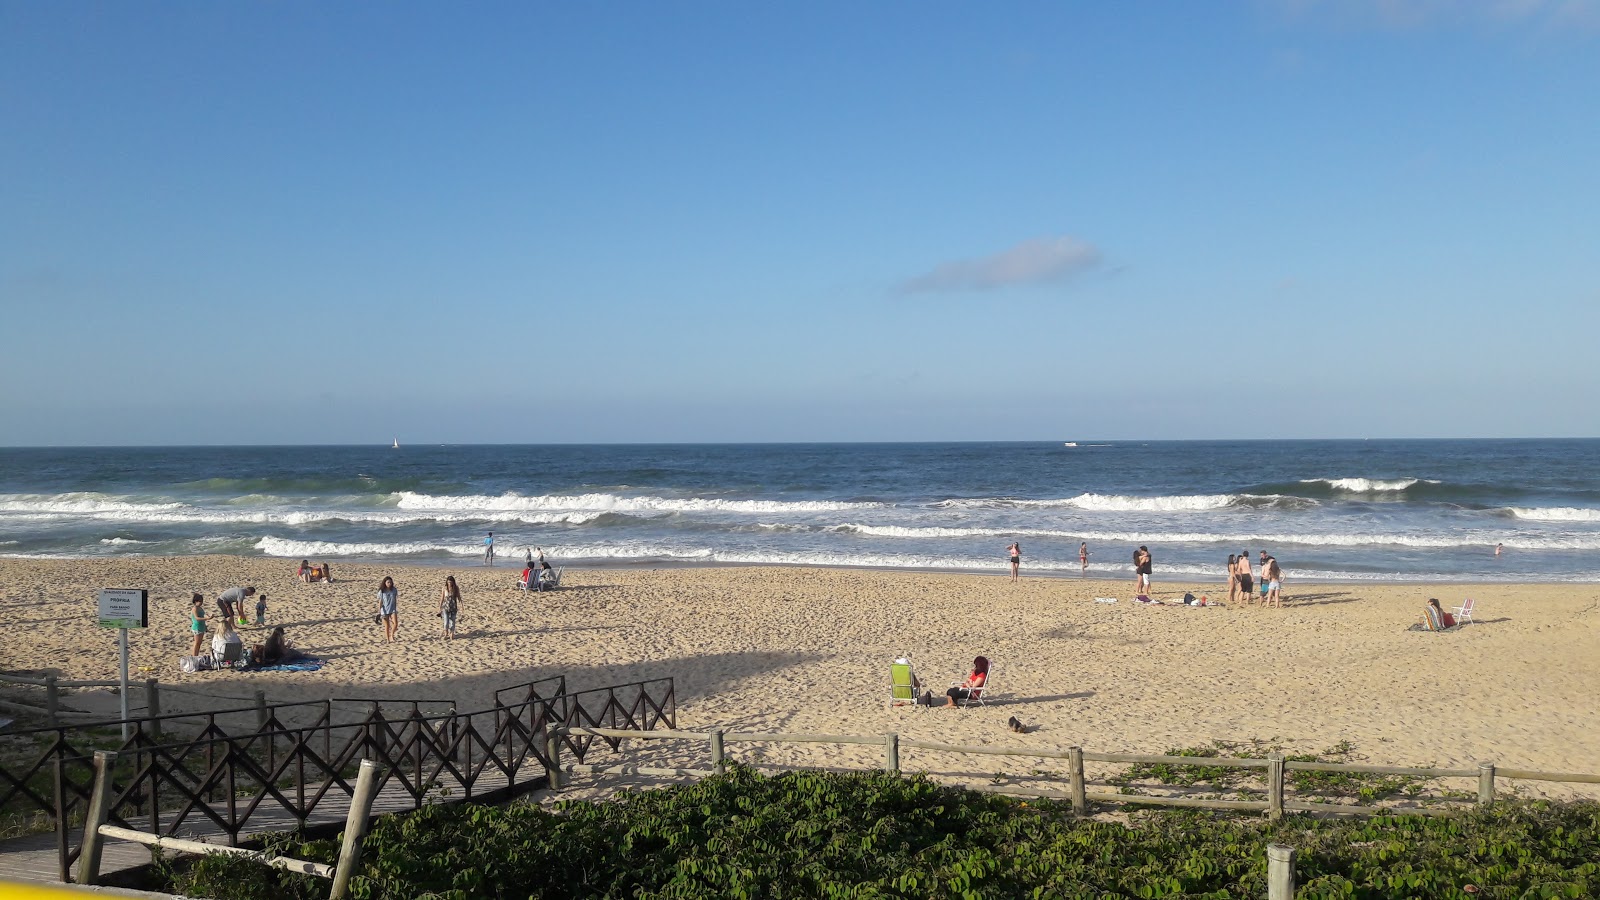 Fotografie cu Praia dos Amores - locul popular printre cunoscătorii de relaxare